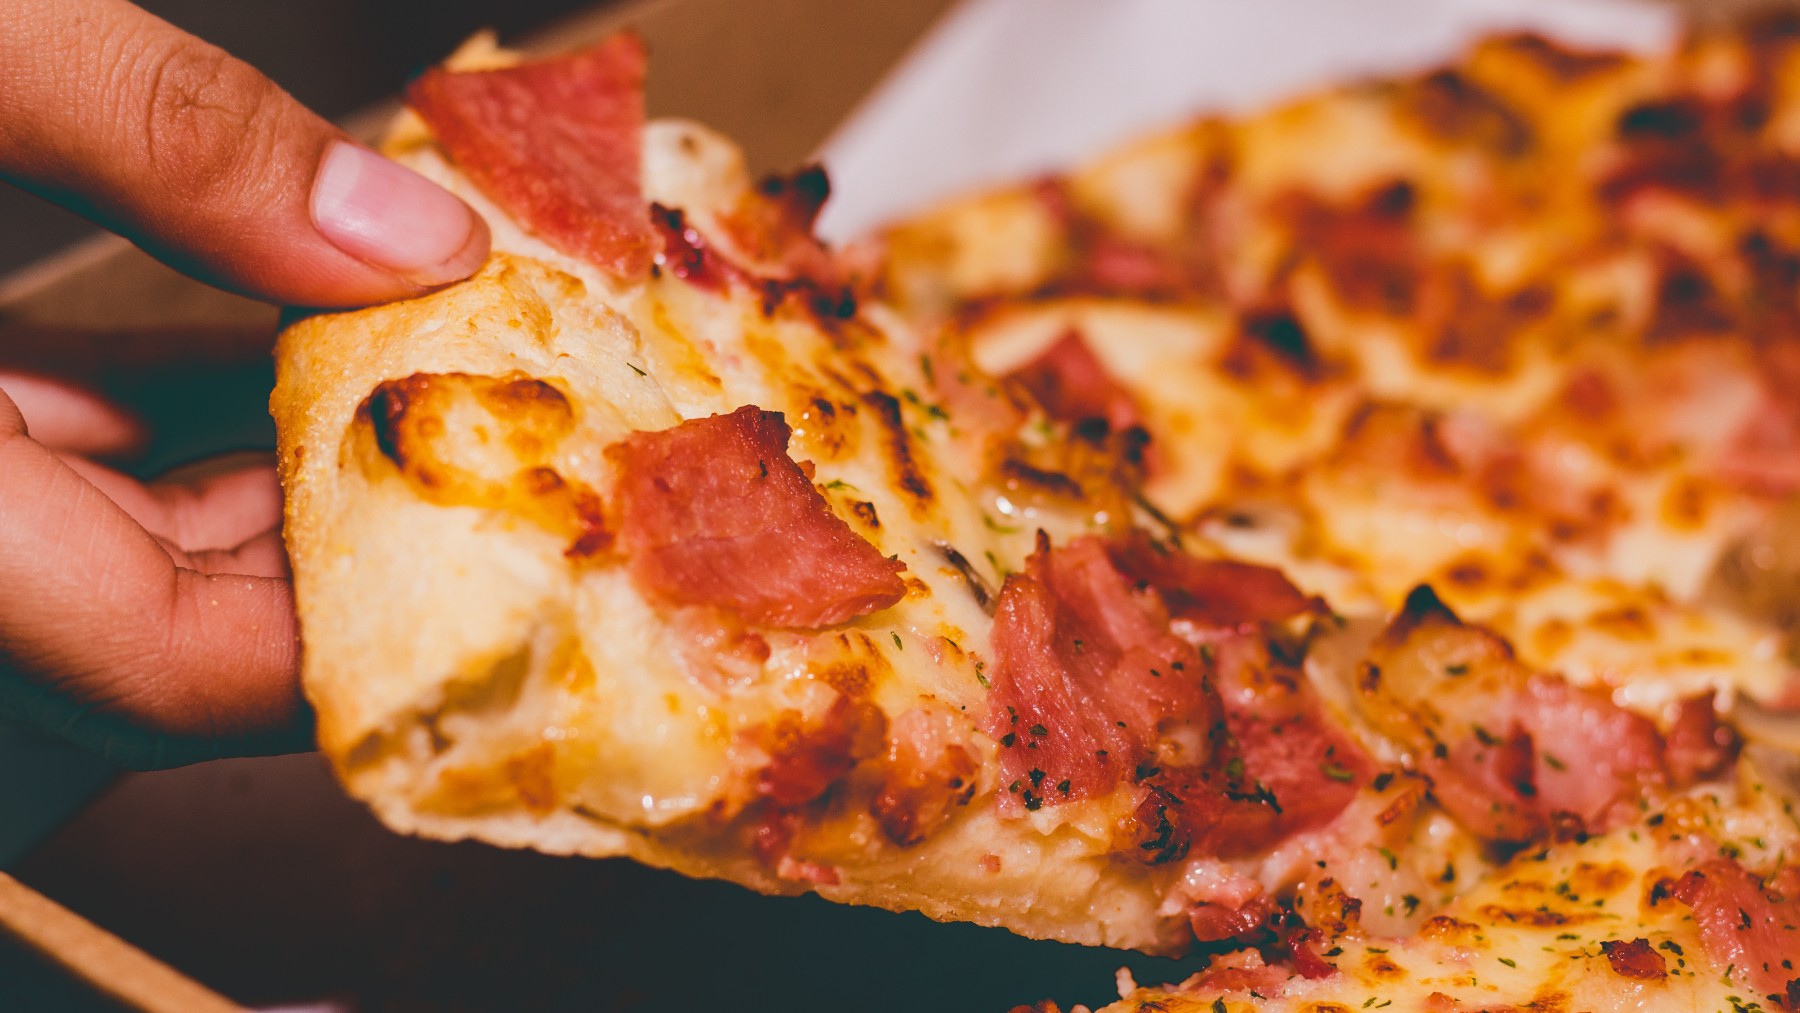 Estás corriendo un grave peligro si haces esto con las pizzas en tu casa: lo dice un experto